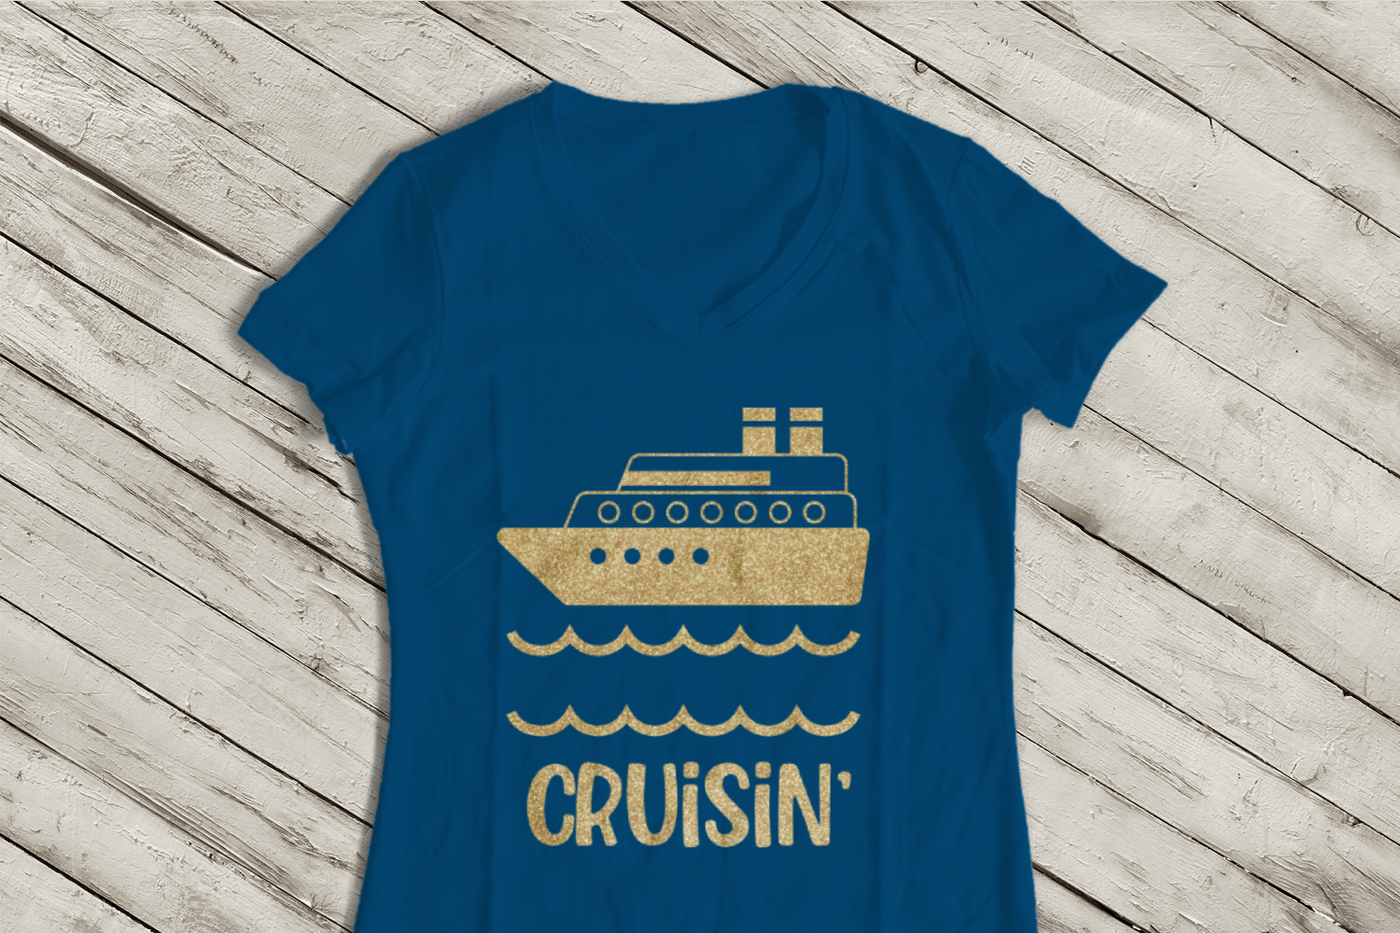 Cruise ship design